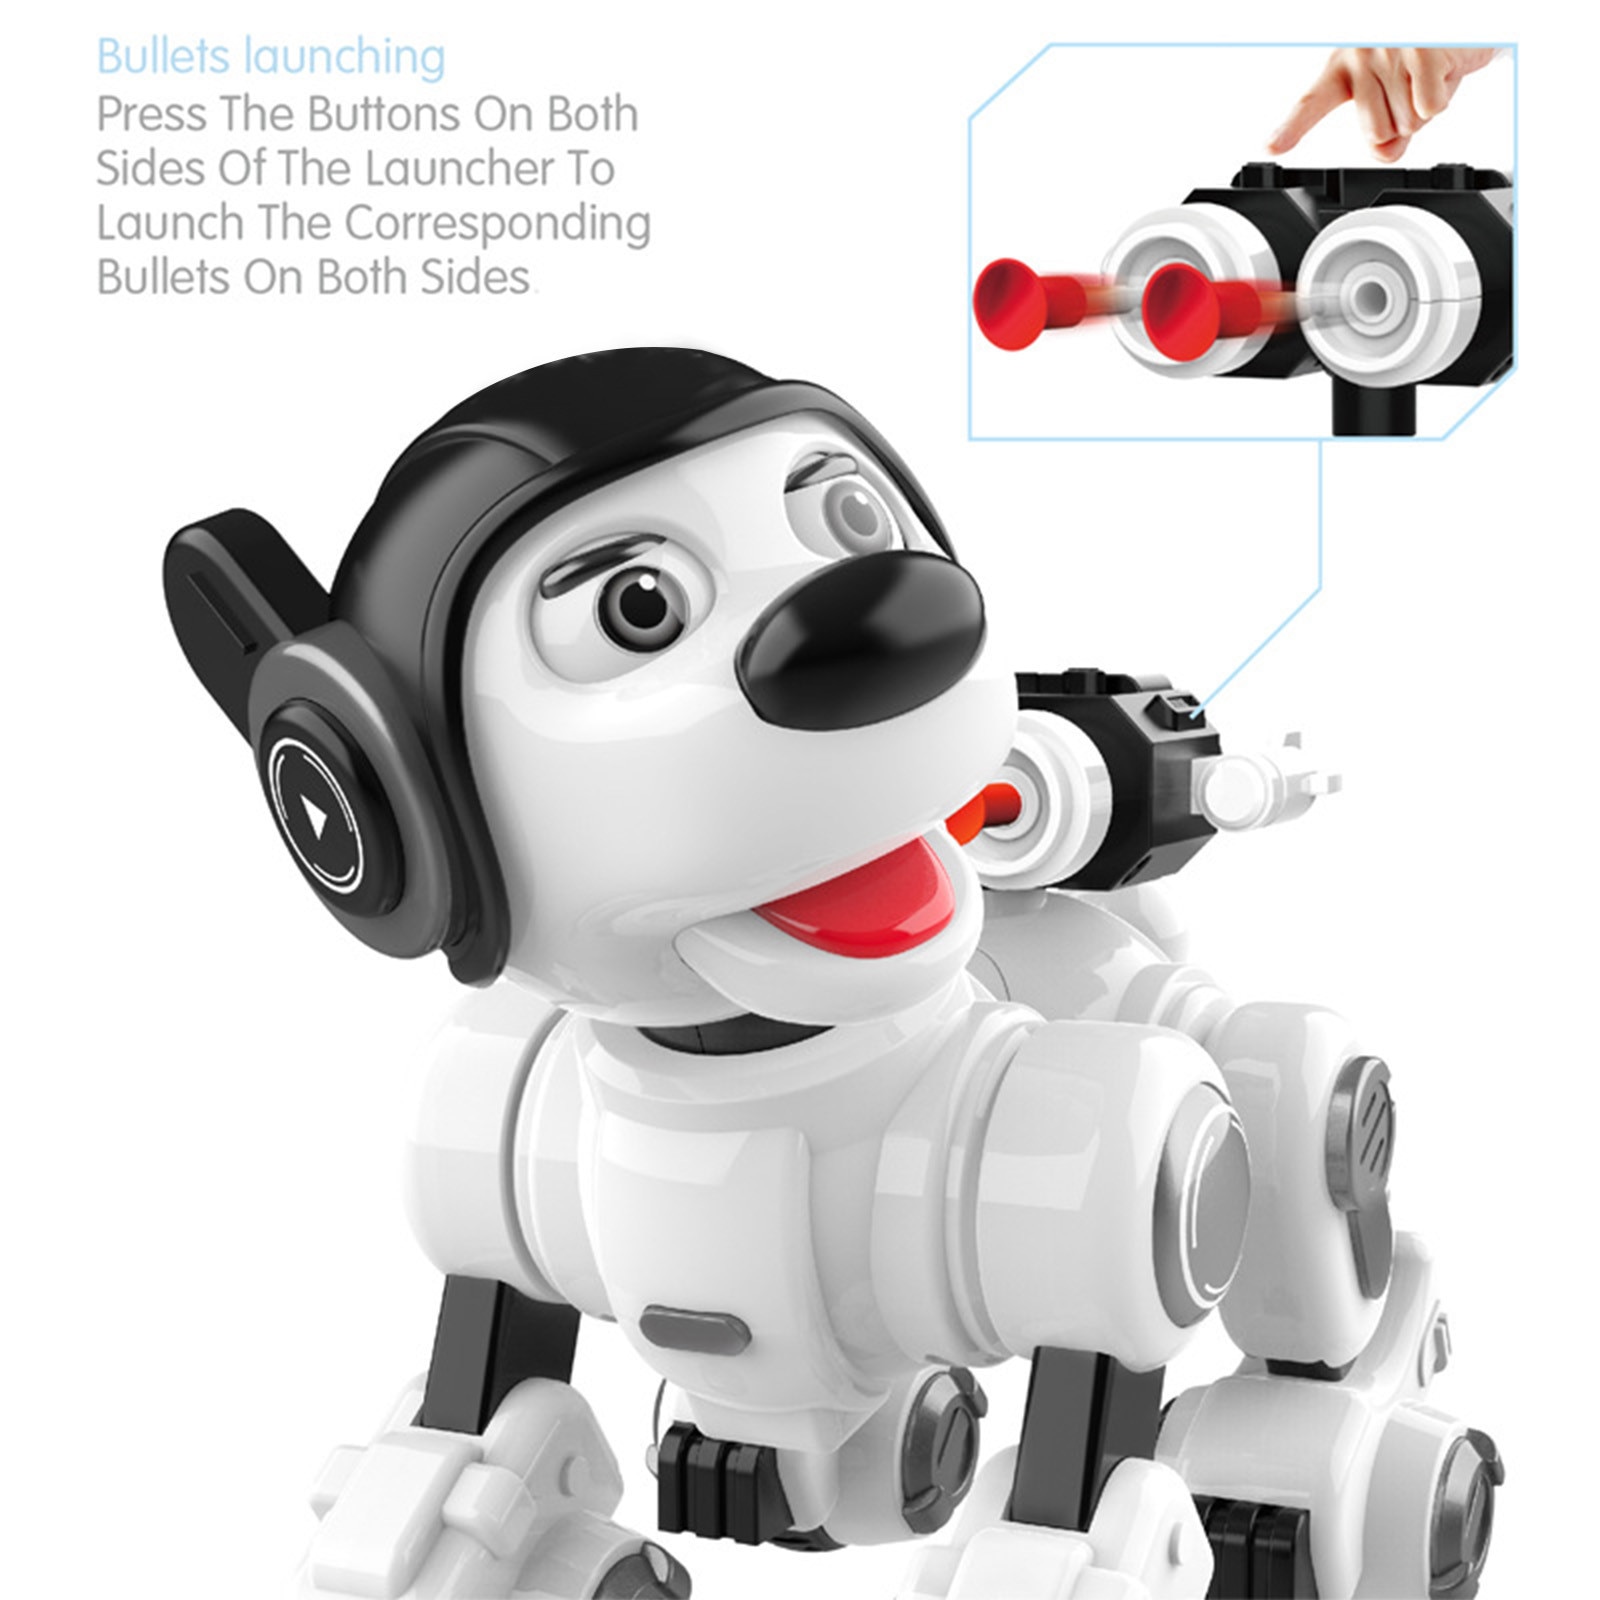 כלב רובוט שמירה צעצוע חכם לילדים